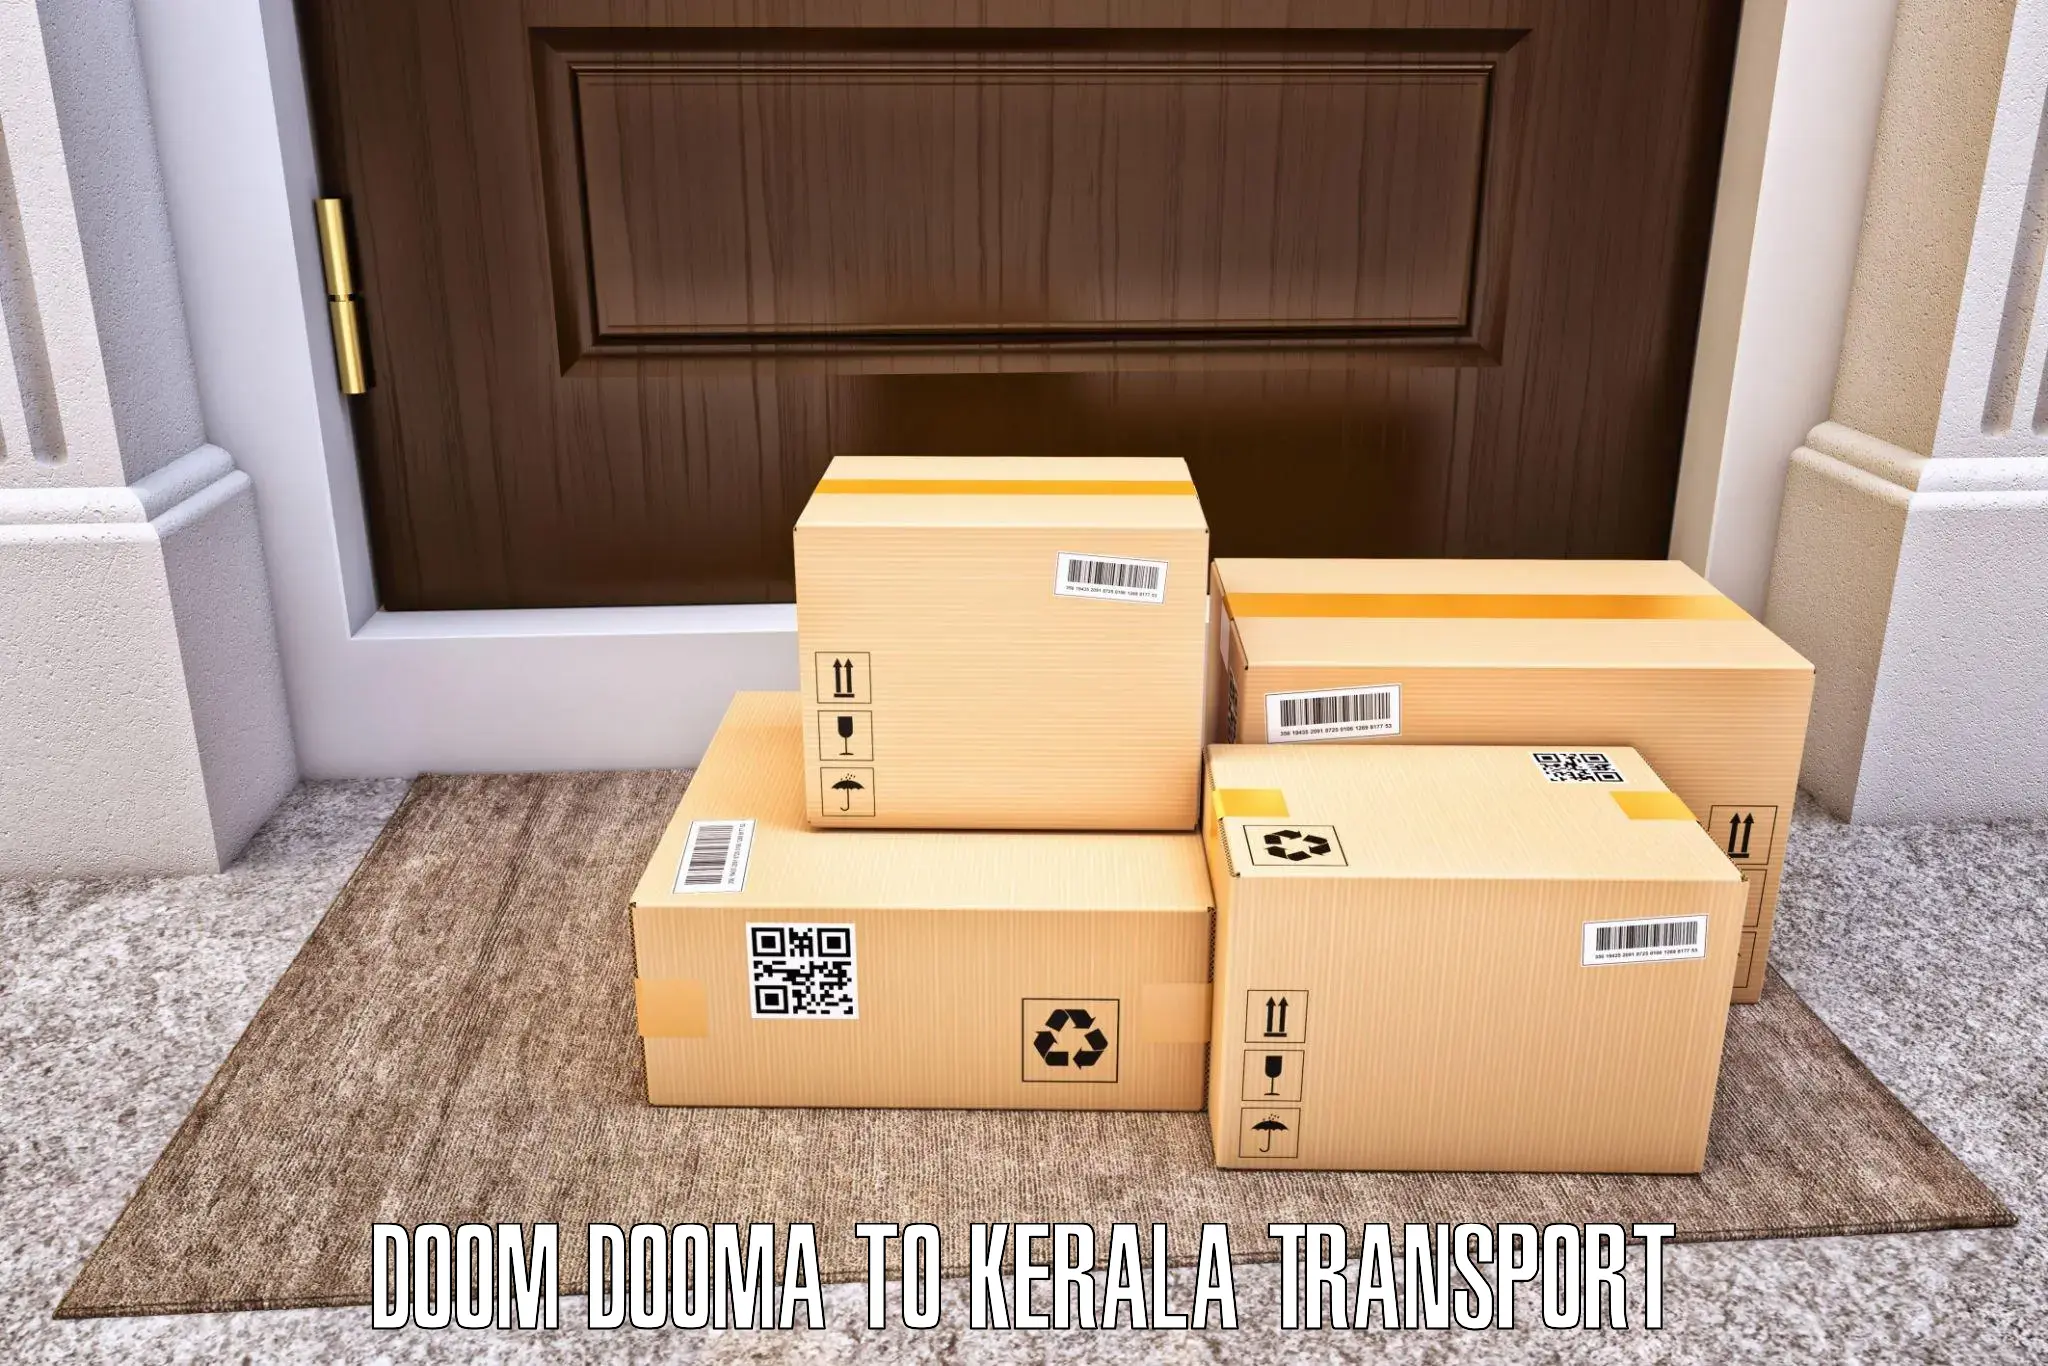 Daily transport service Doom Dooma to Wadakkanchery